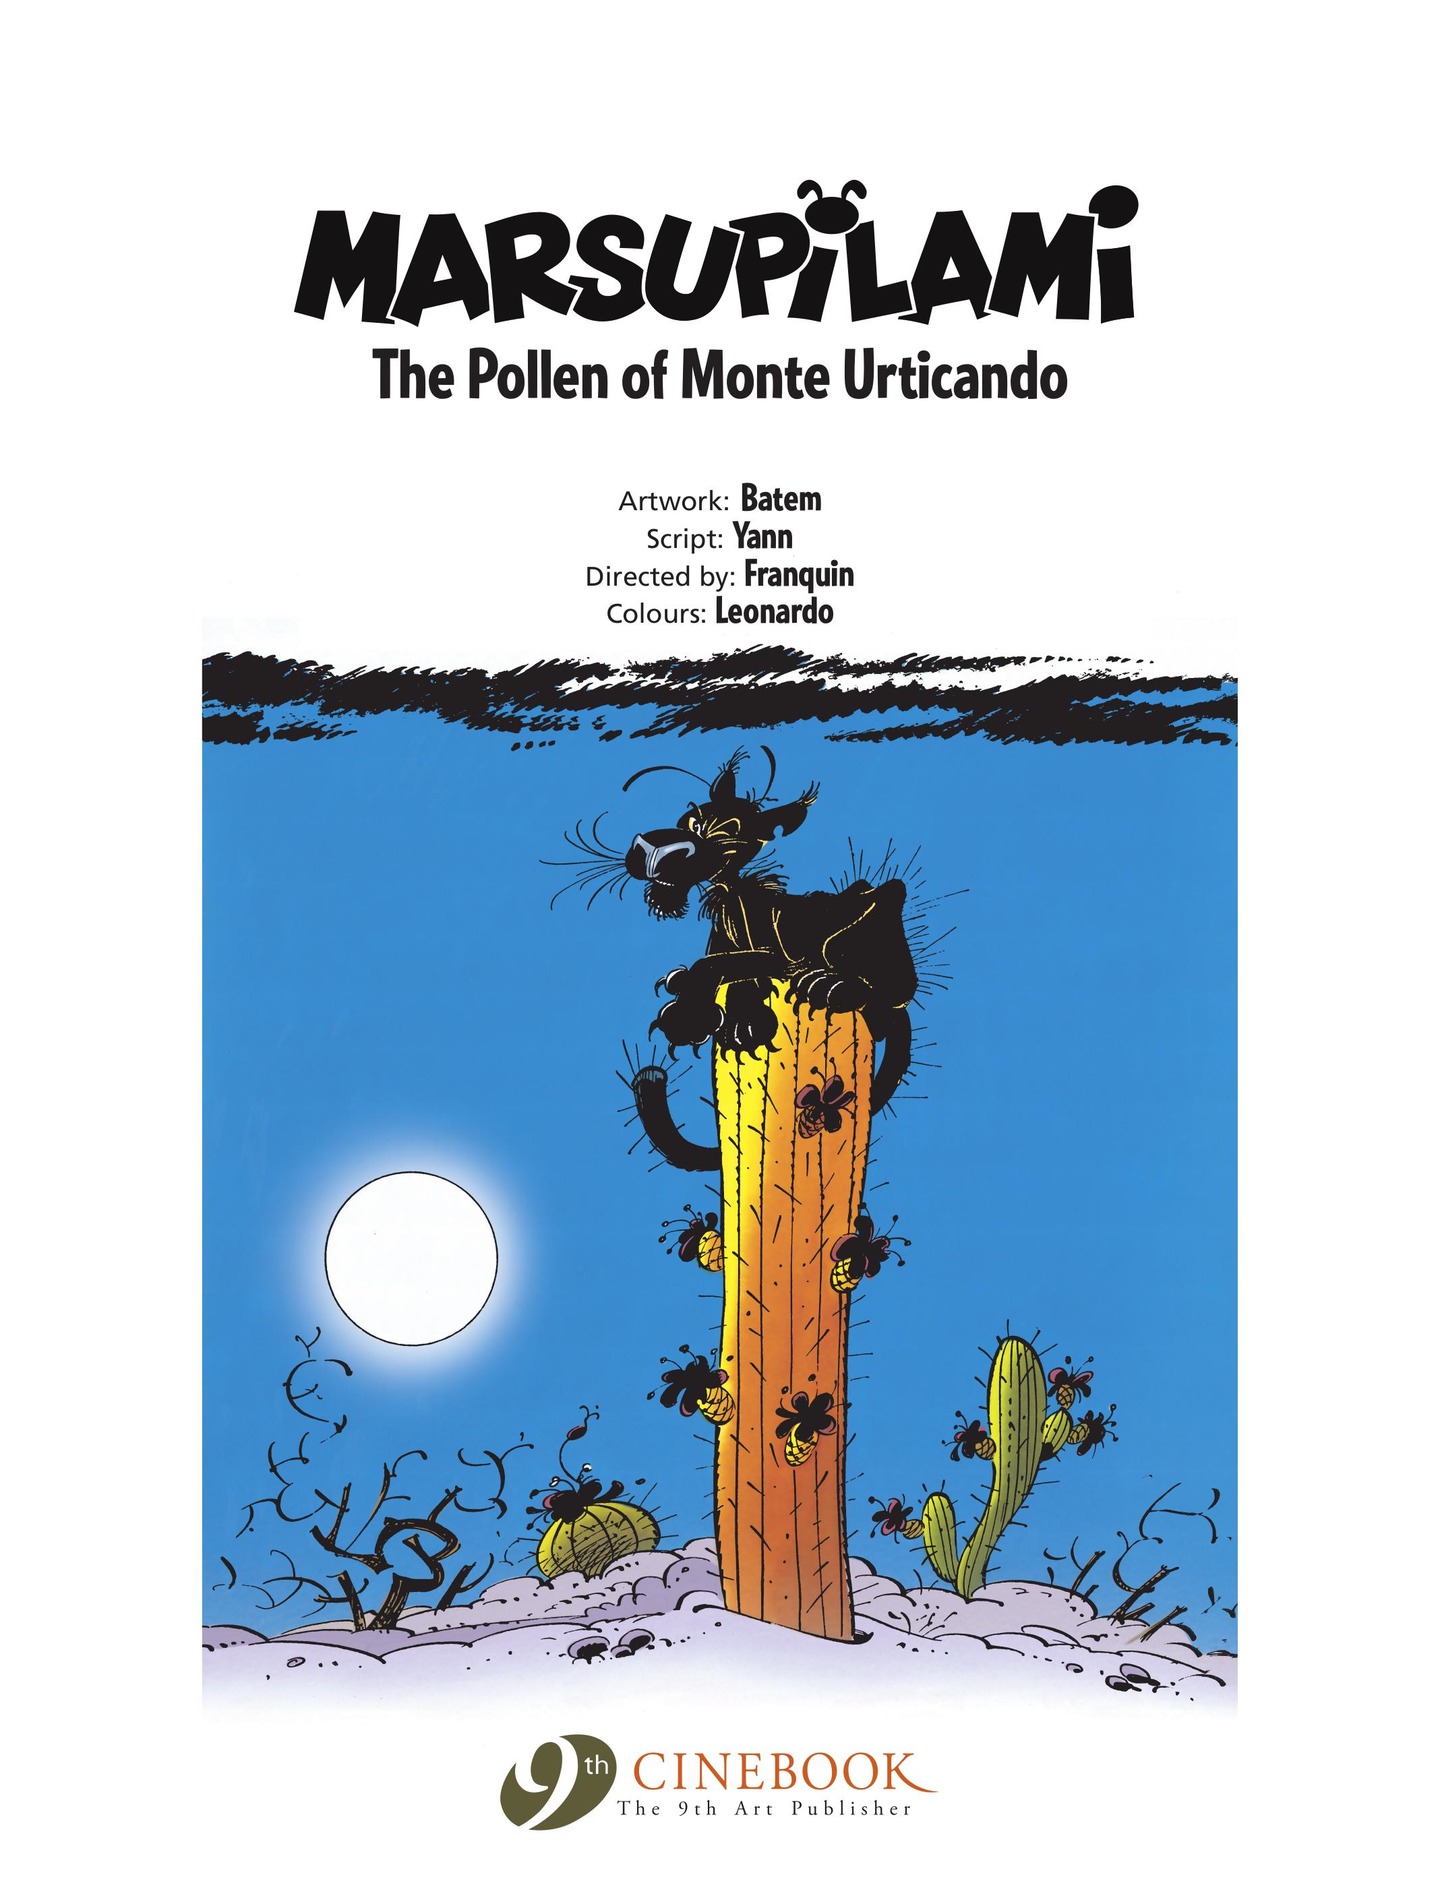 Read online Marsupilami comic -  Issue #4 - 3